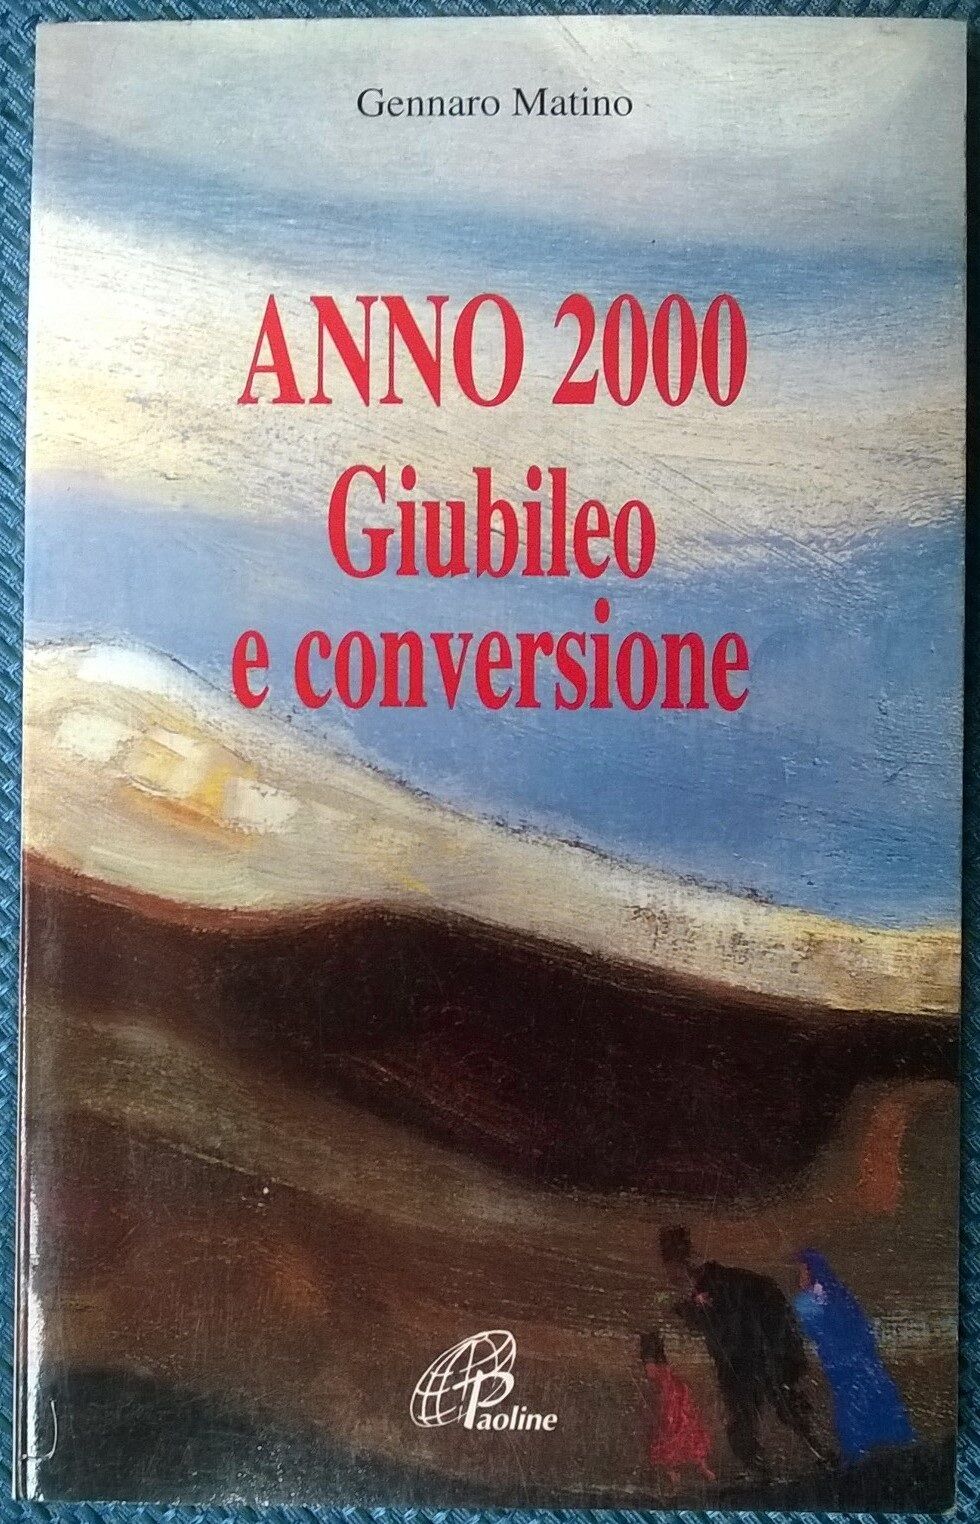 Anno 2000 Giubileo e conversione - Gennaro Matino - 1997, Paoline - L 